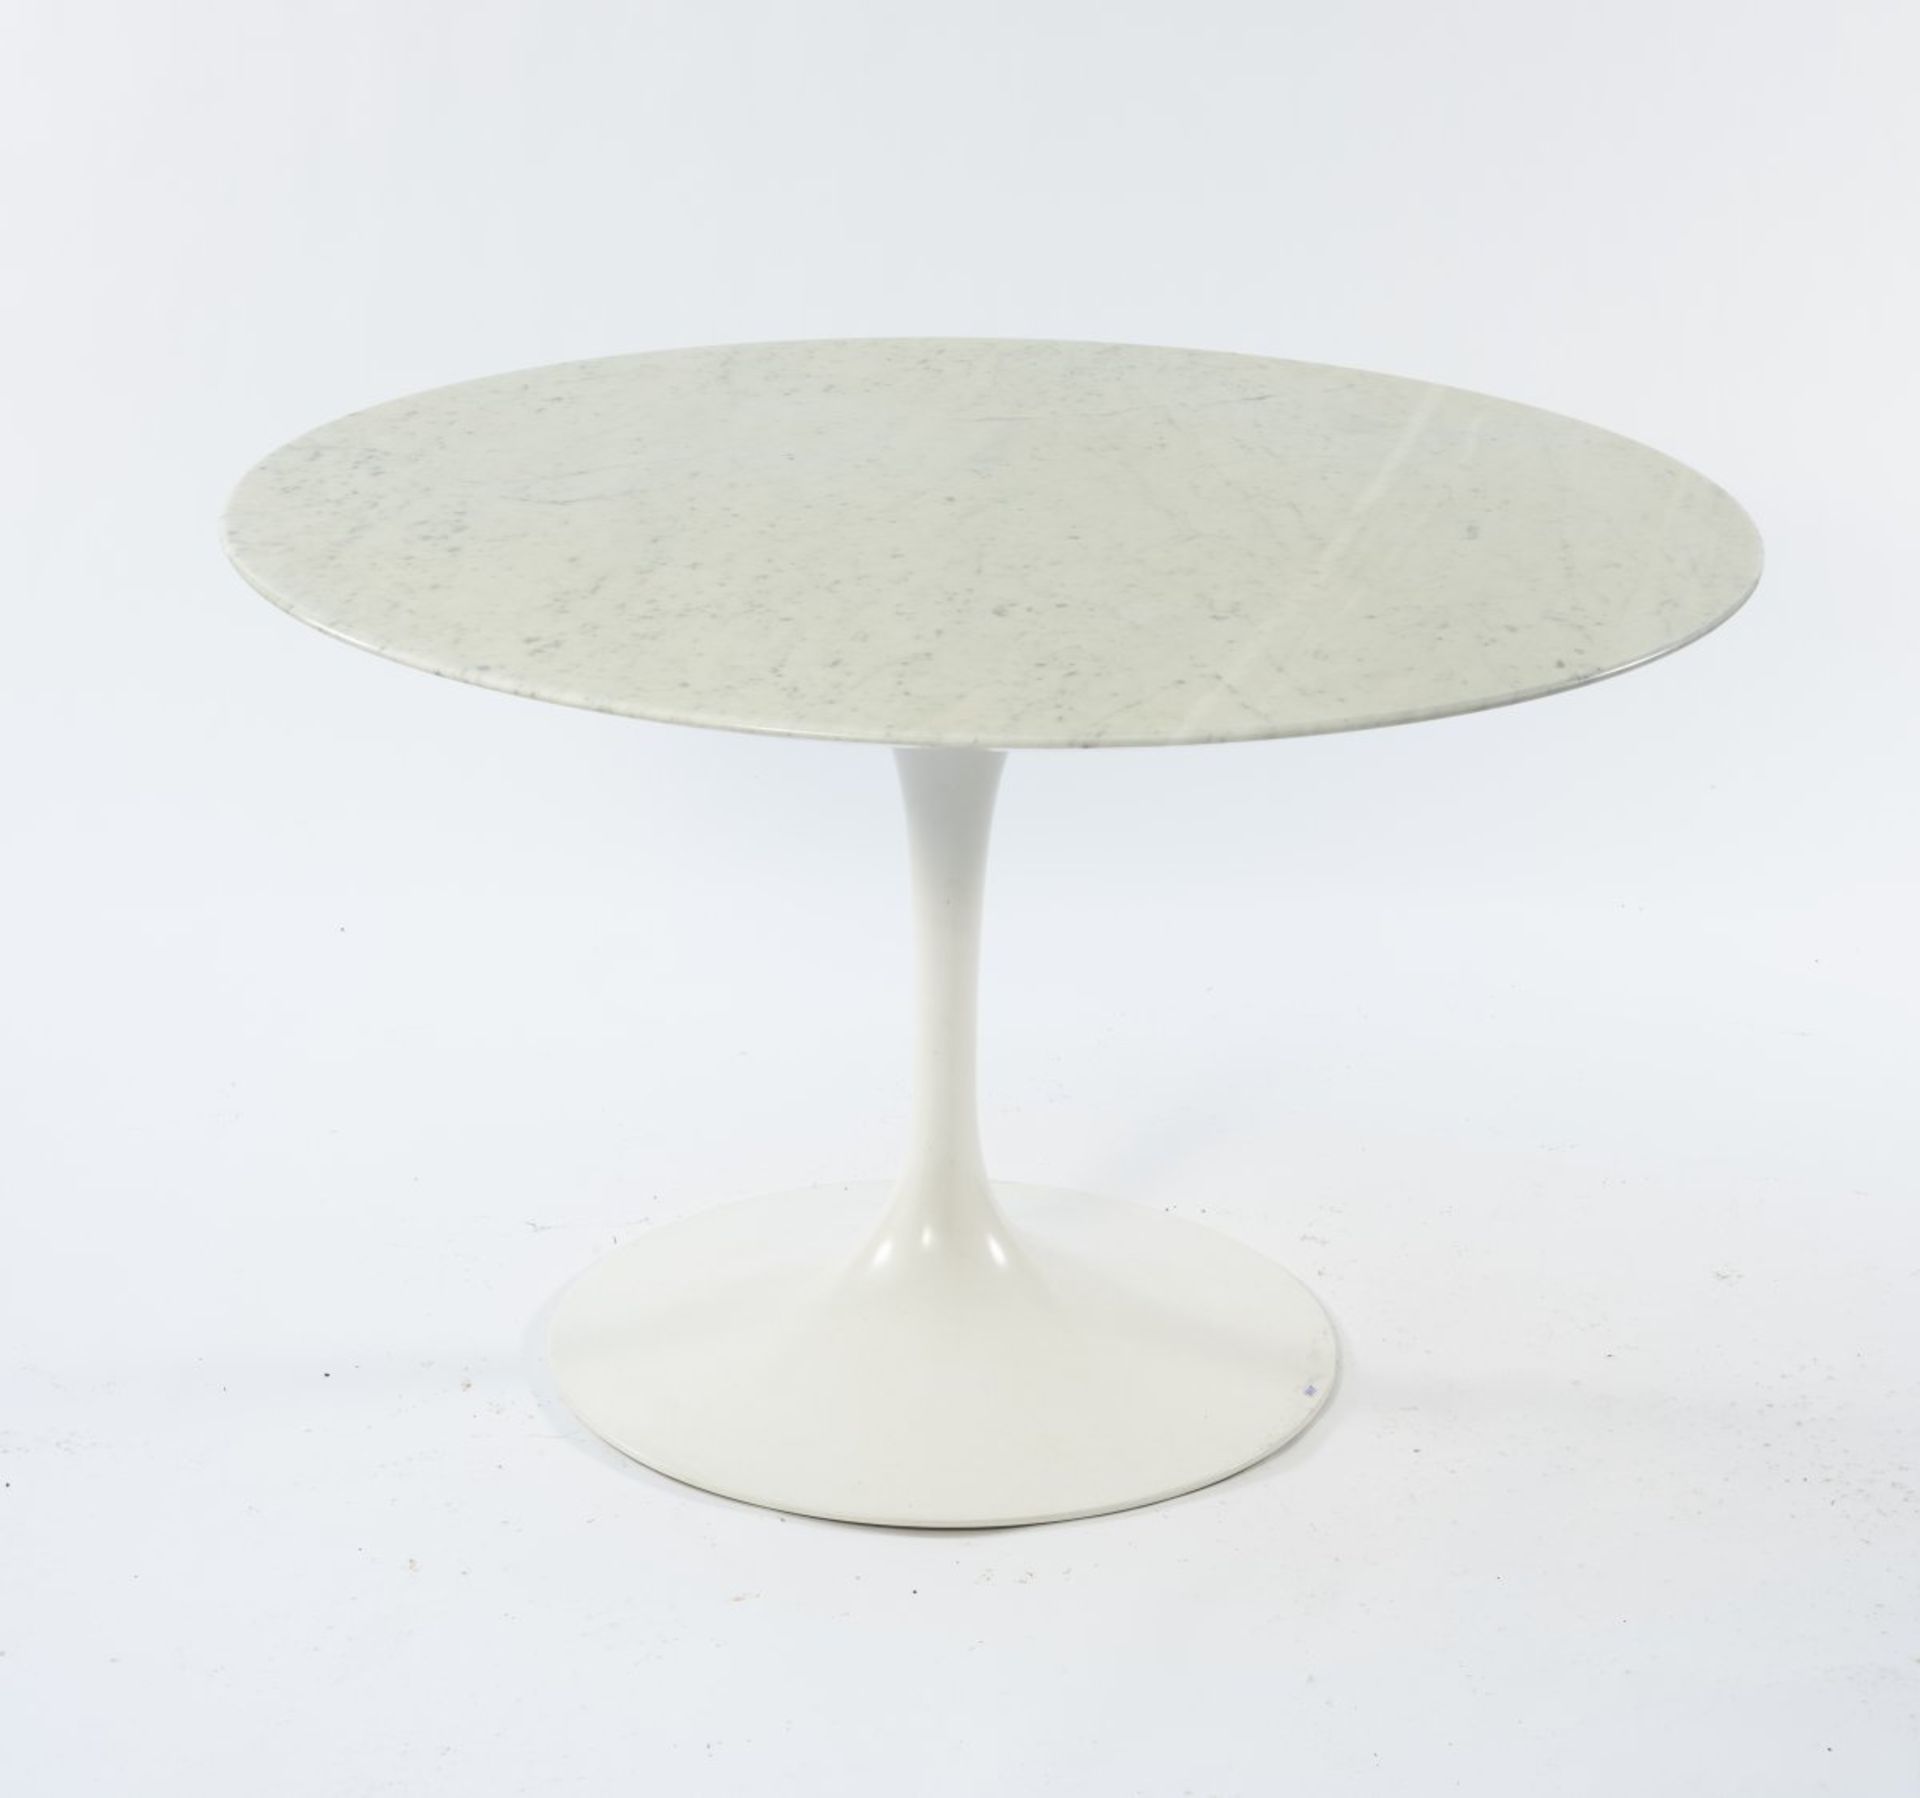 Eero Saarinen, Tisch 'Pedestal' - '164', 1956 - Bild 4 aus 6